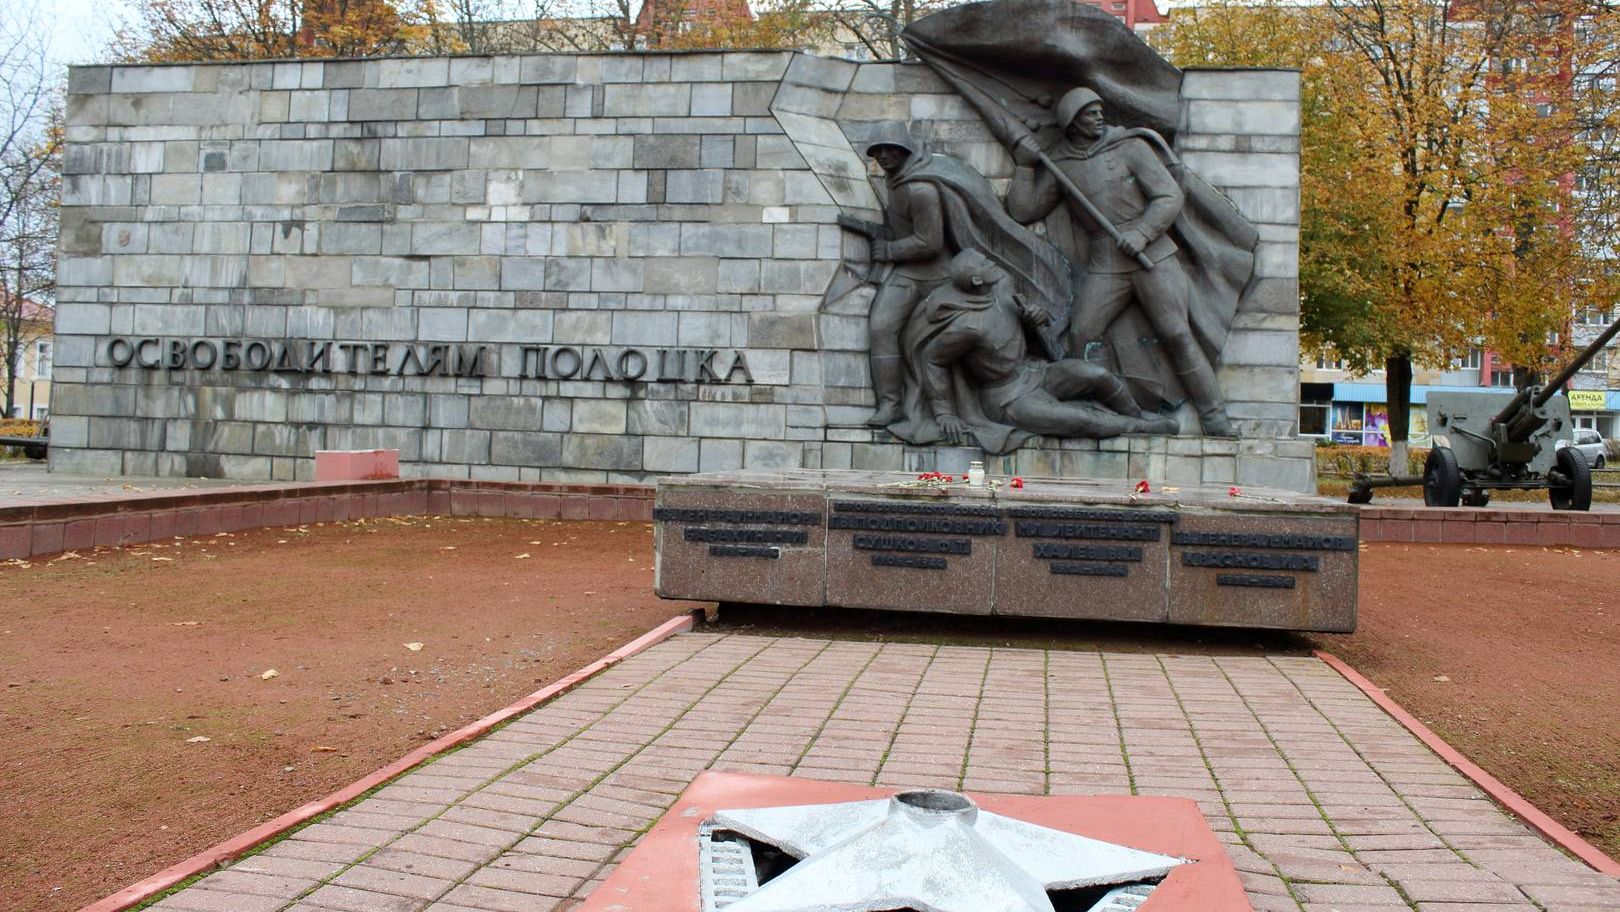 Потухший вечный огонь у памятника освободителям Полоцка, Белоруссия